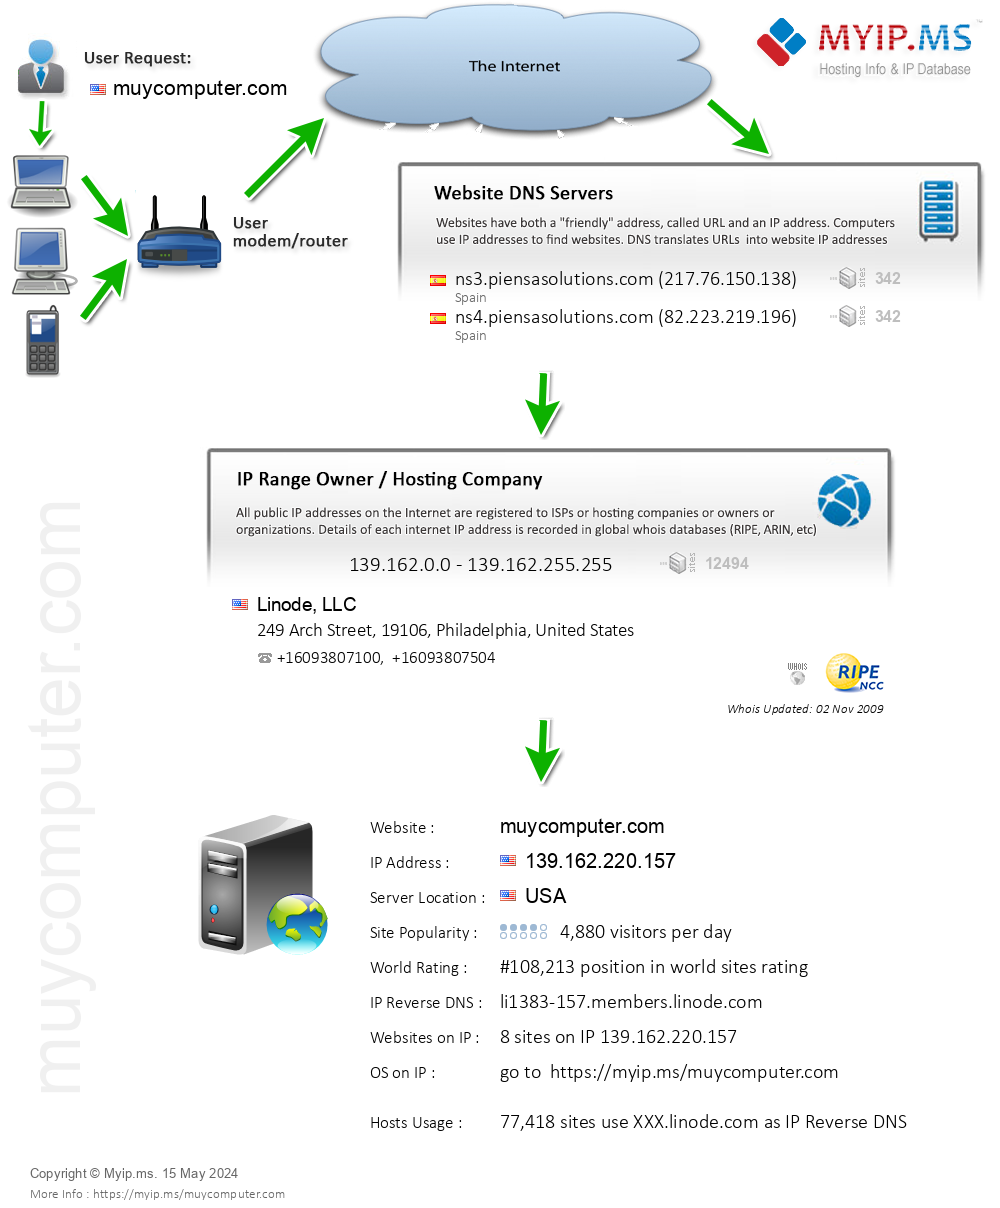 Muycomputer.com - Website Hosting Visual IP Diagram